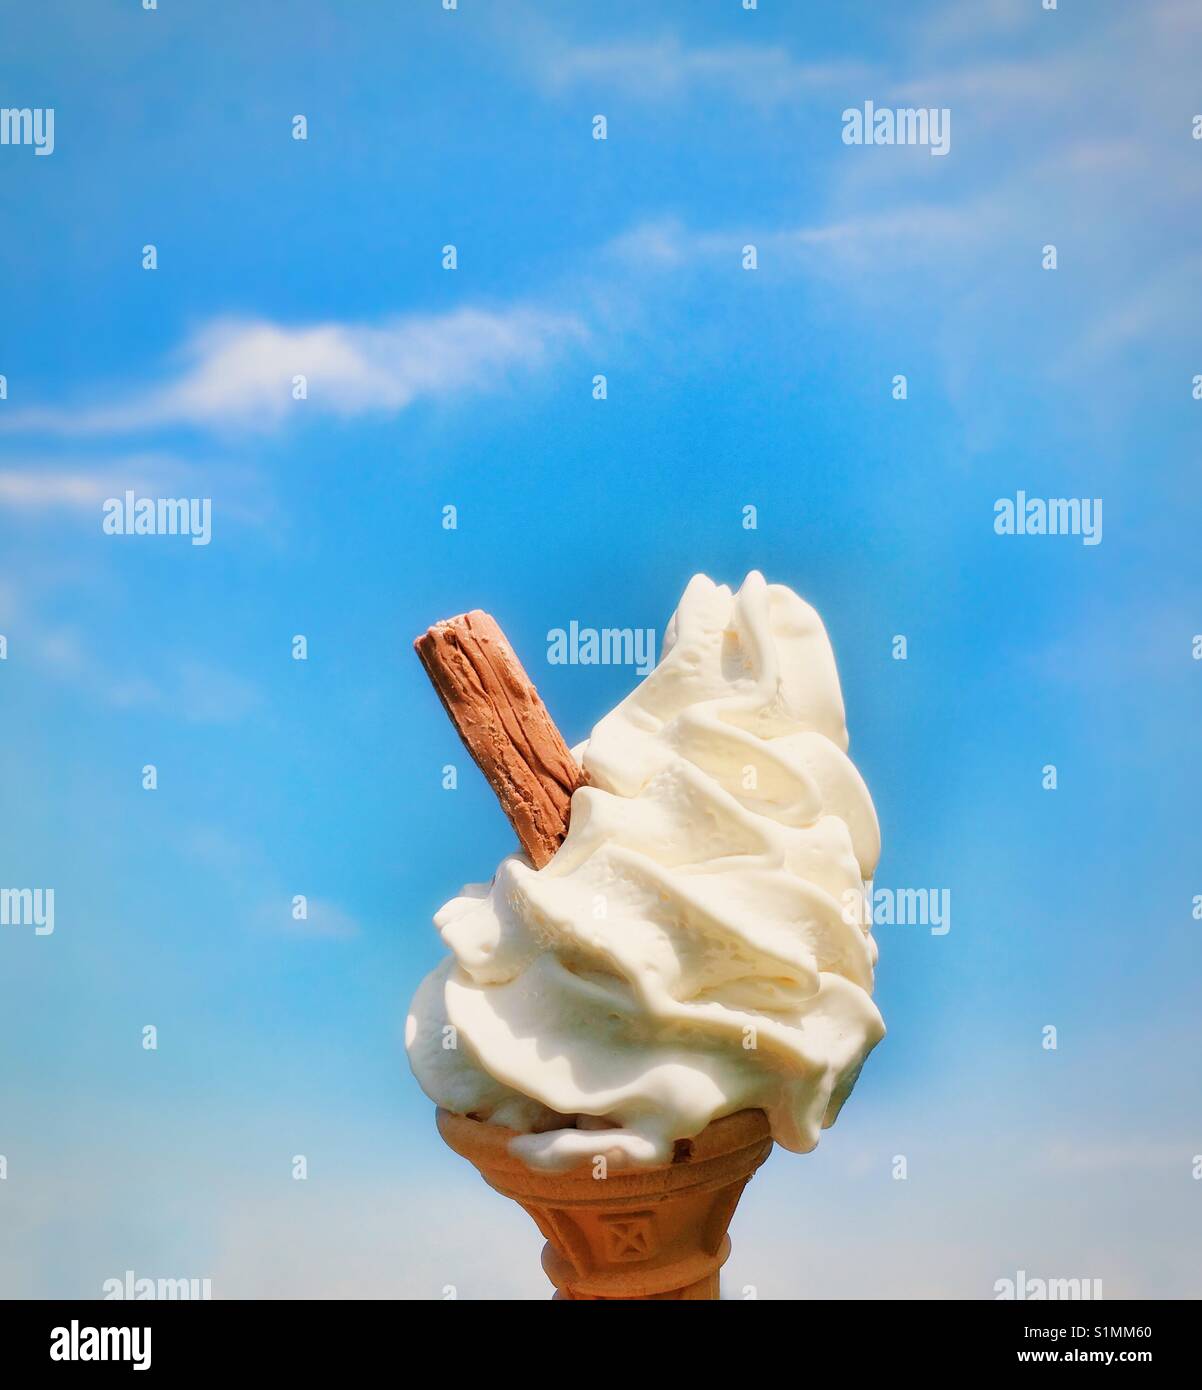 Cornet de crème glacée avec de la crème glacée et le chocolat flake against a blue sky Banque D'Images